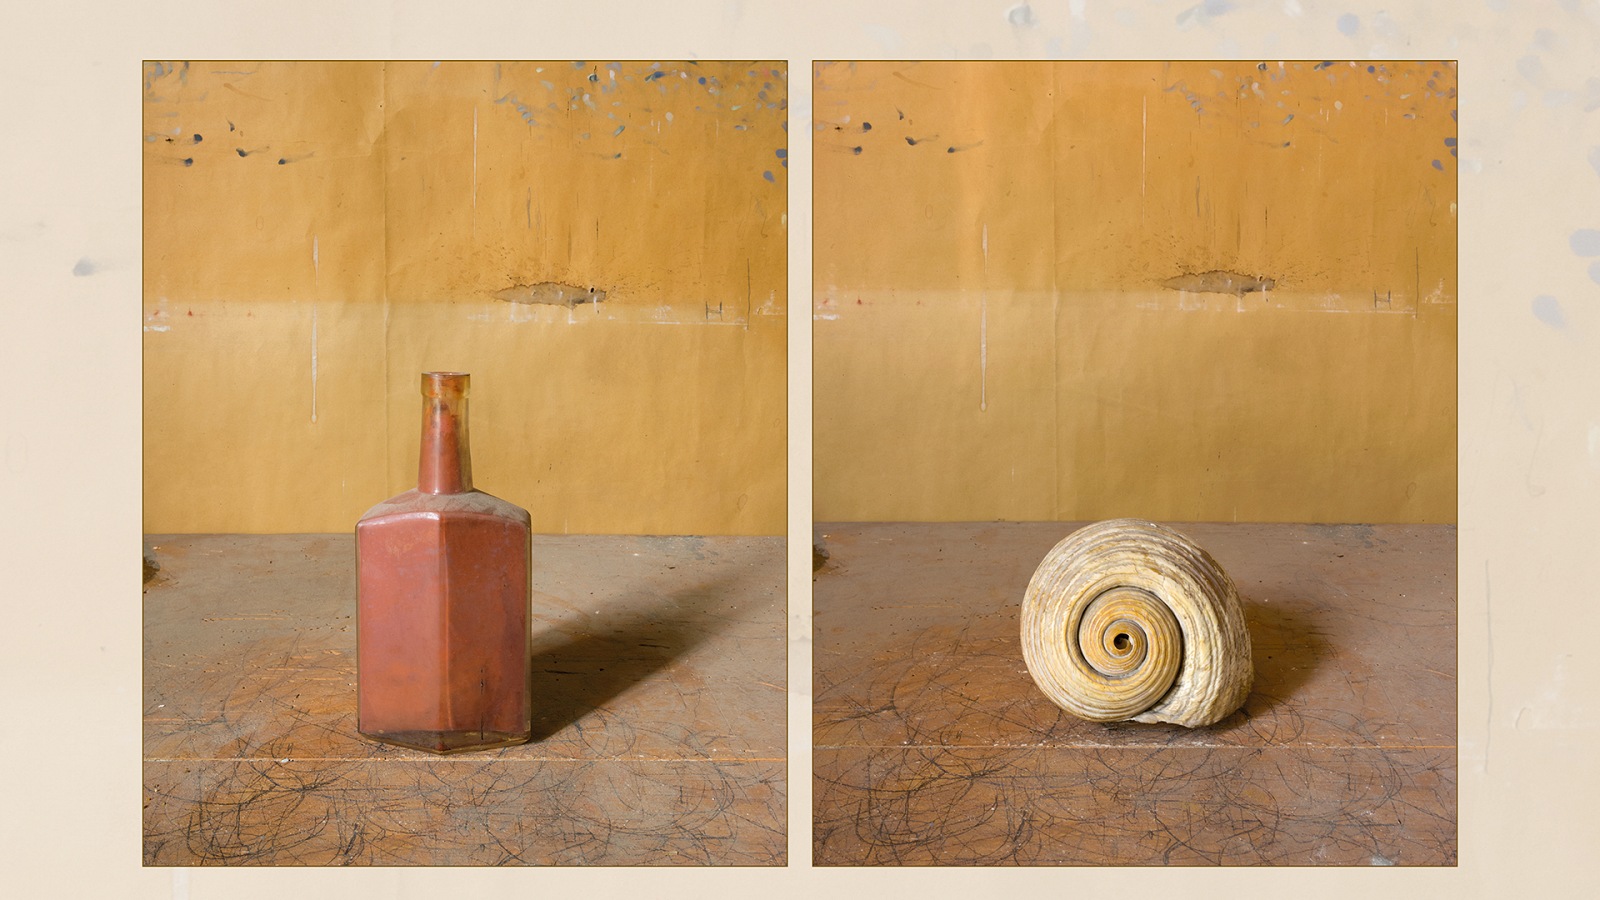 Morandi's Objects by Joel Meyerowitz